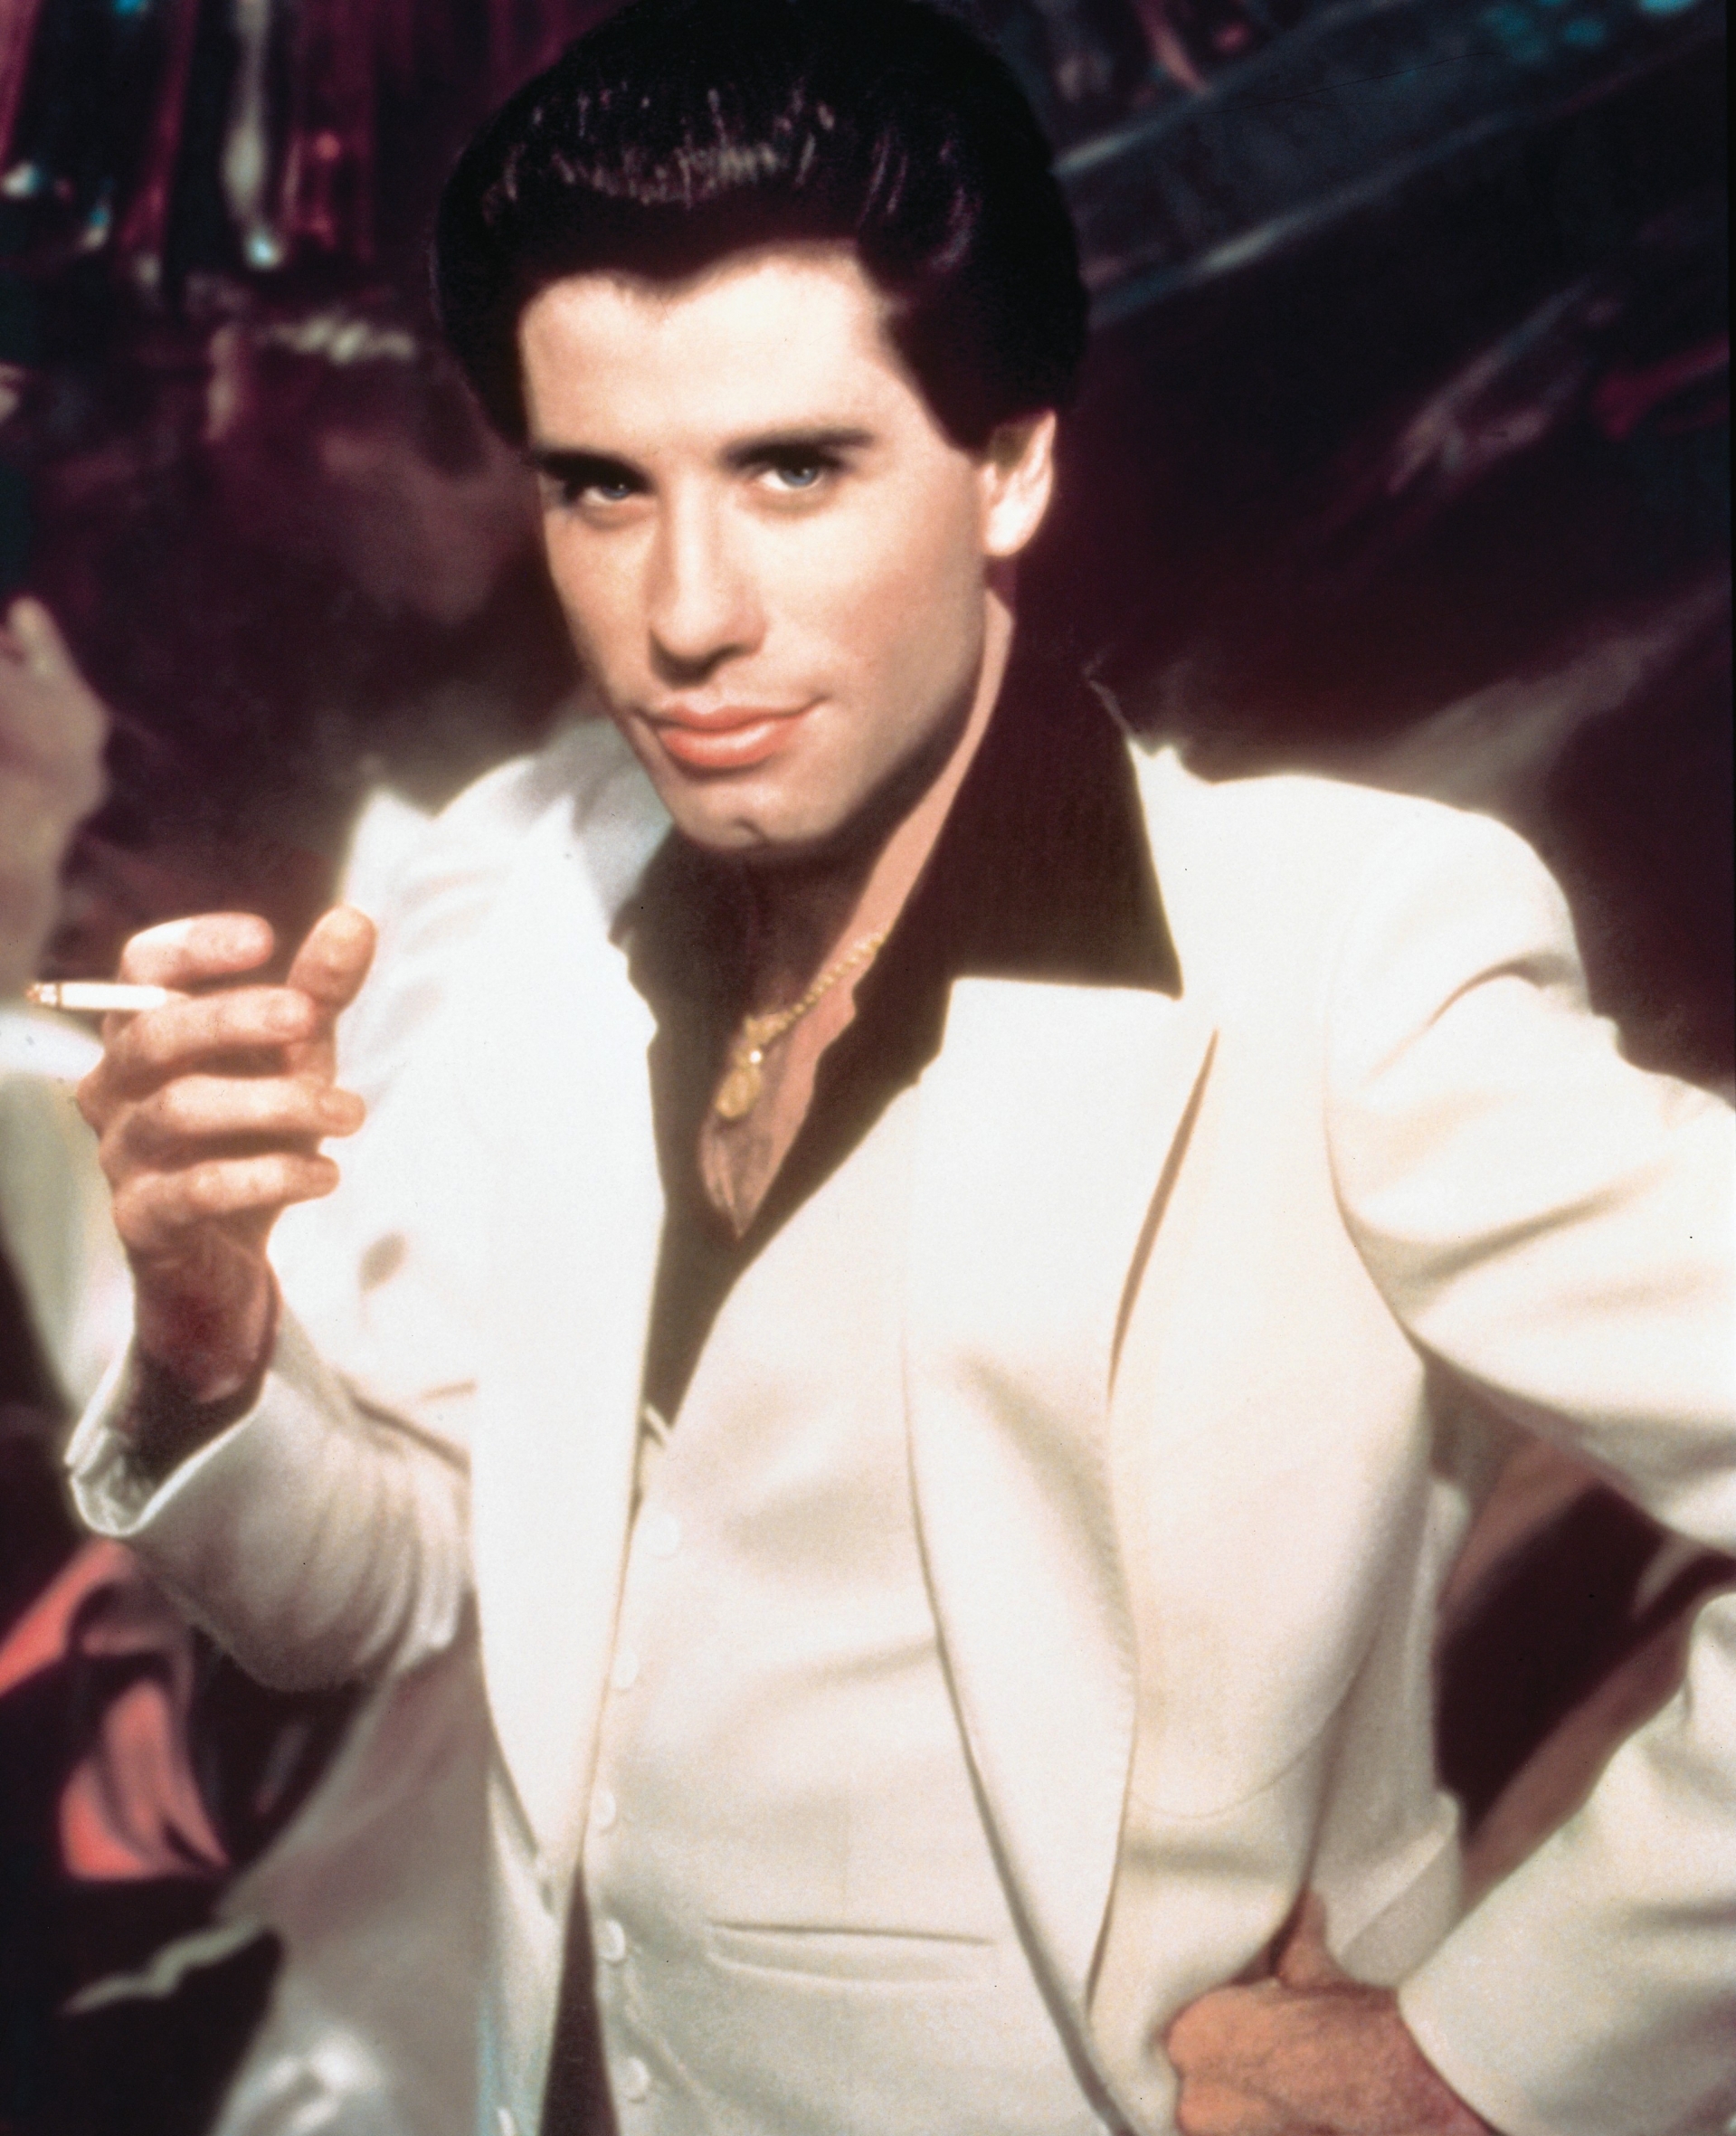 Phong cách mặc suit đã trở nên phóng khoáng hơn trong thời đại Disco. Diễn viên John Travolta đã mặc suit với quần ống loe cạp cao, thả cúc áo khoe vòng cổ trong bộ phim Saturday Night Fever.